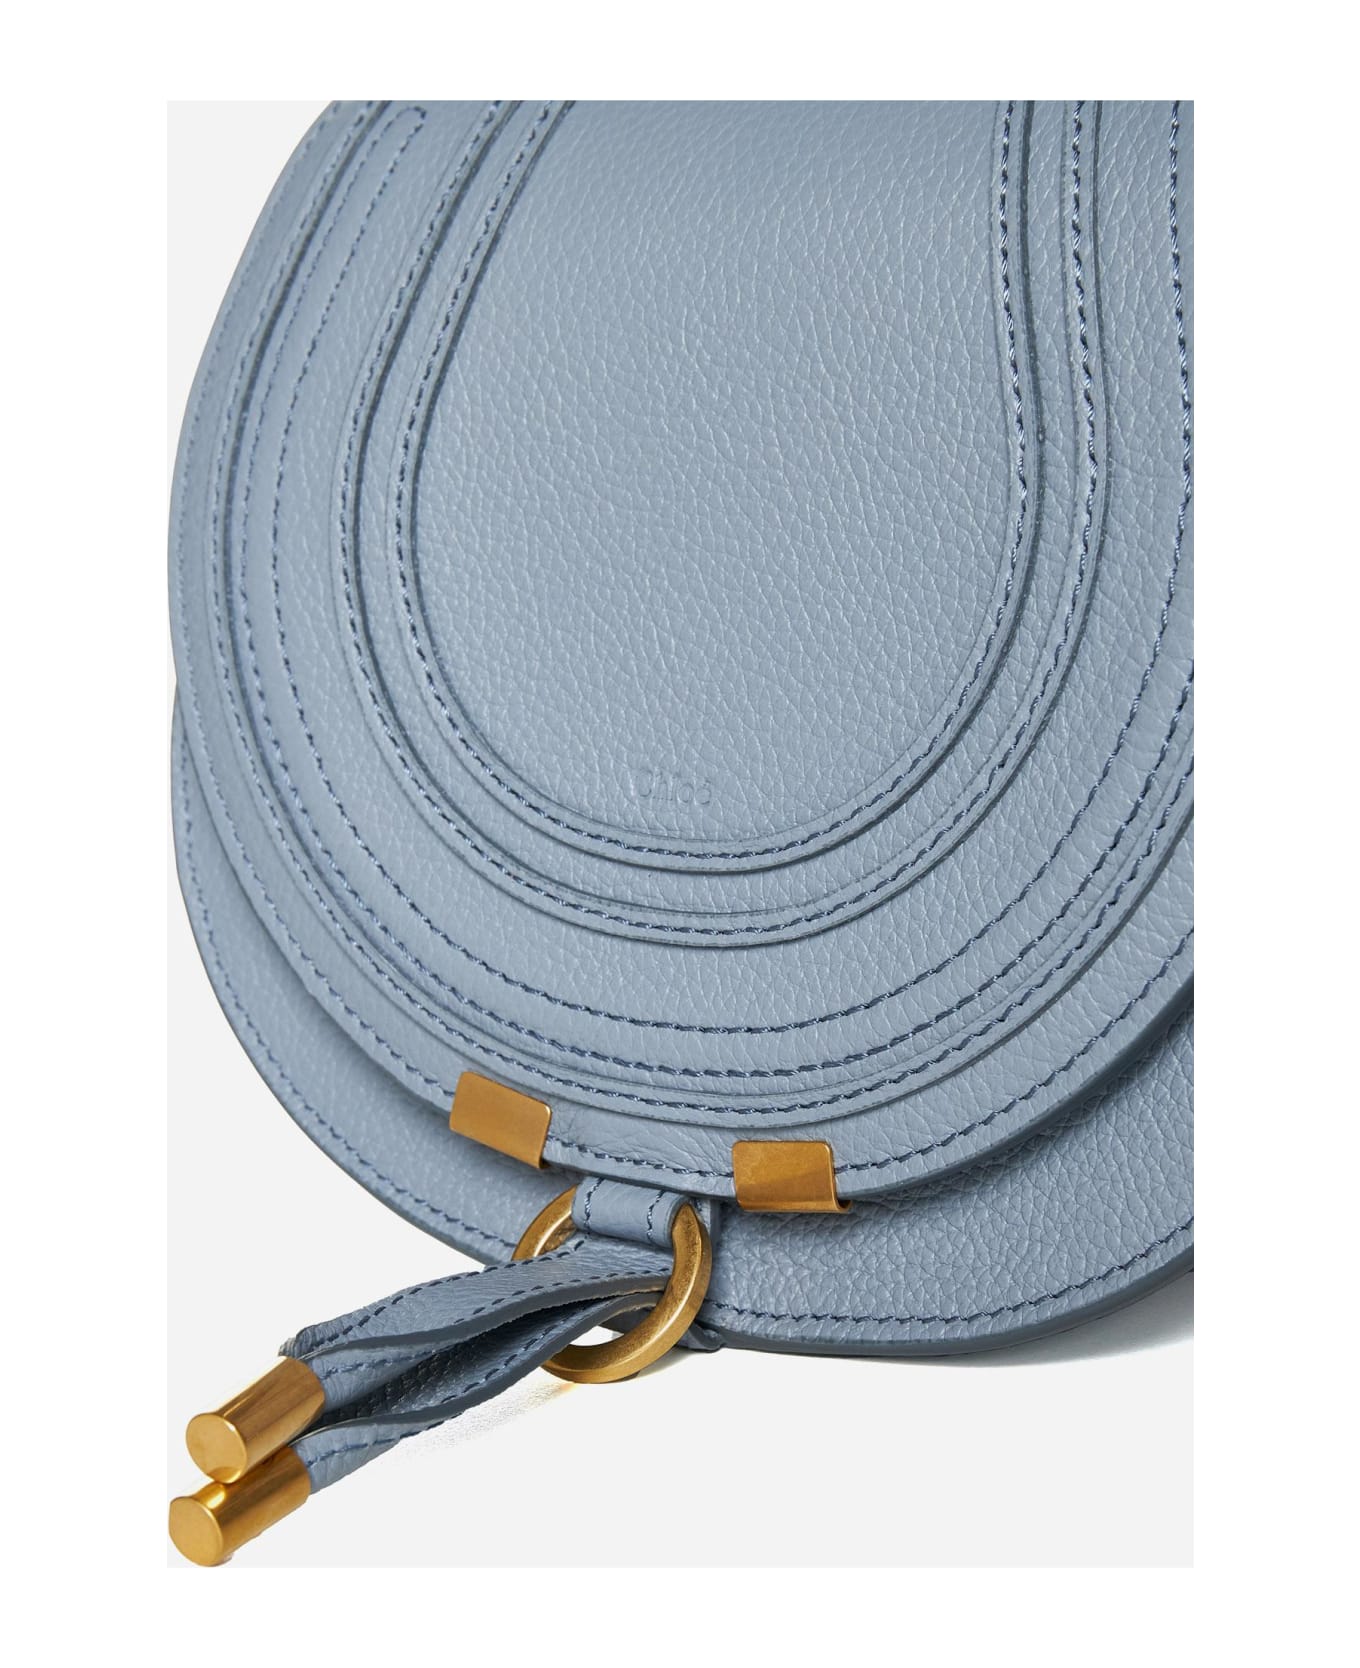 Chloé Marcie Leather Small Bag - Clear Blue